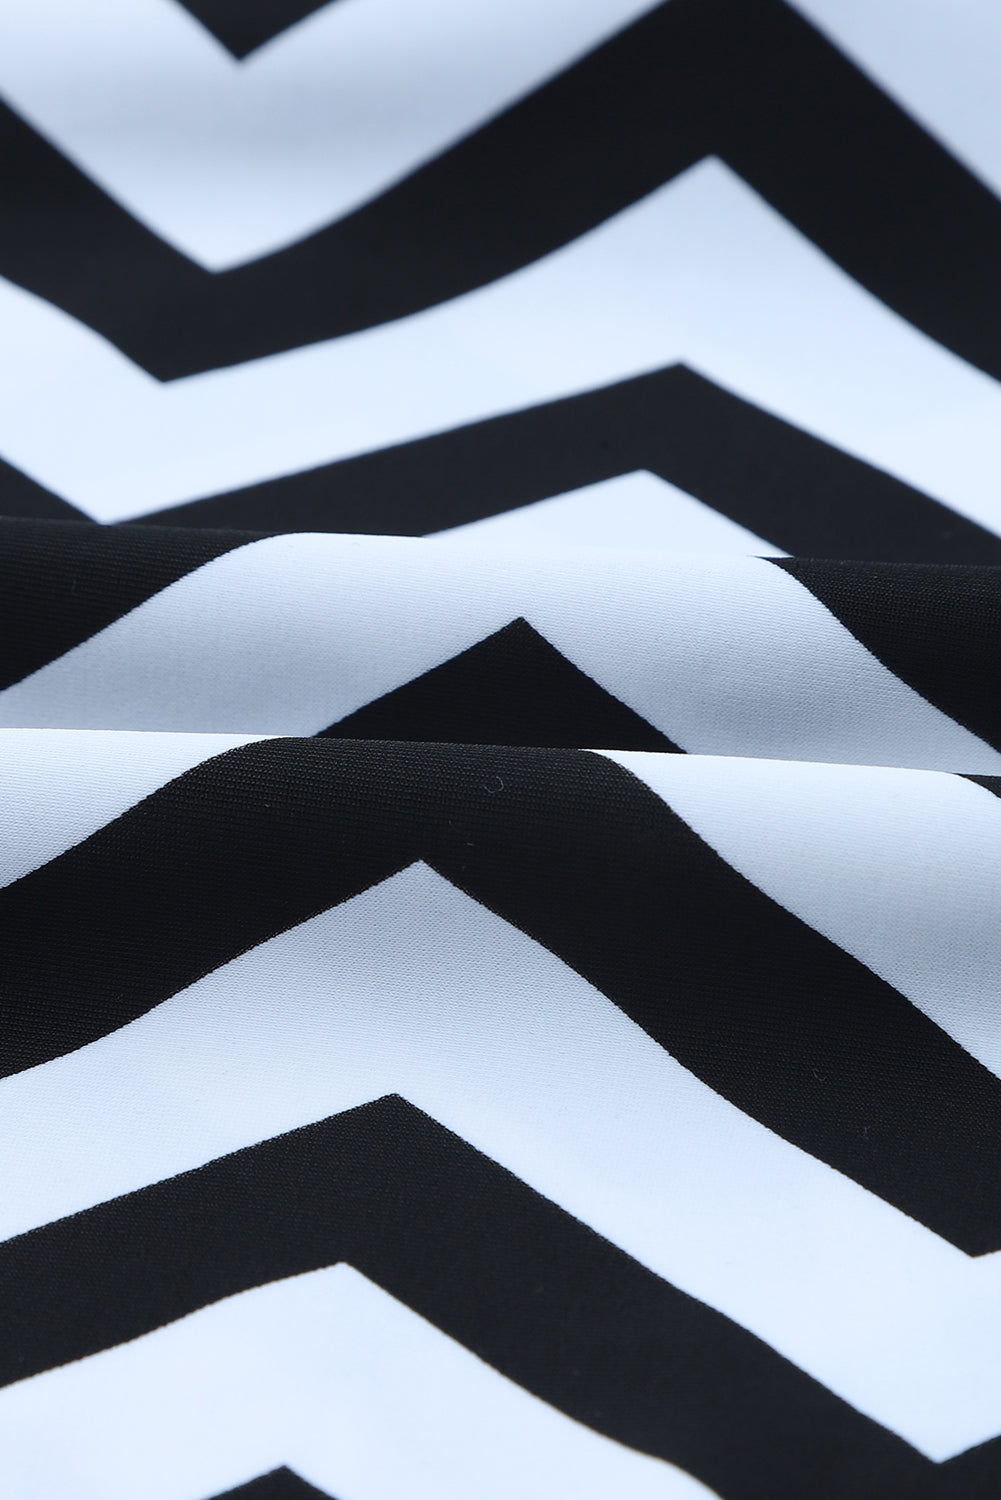 Costume da bagno Tankini 2 pezzi con stampa a zigzag bianco nero